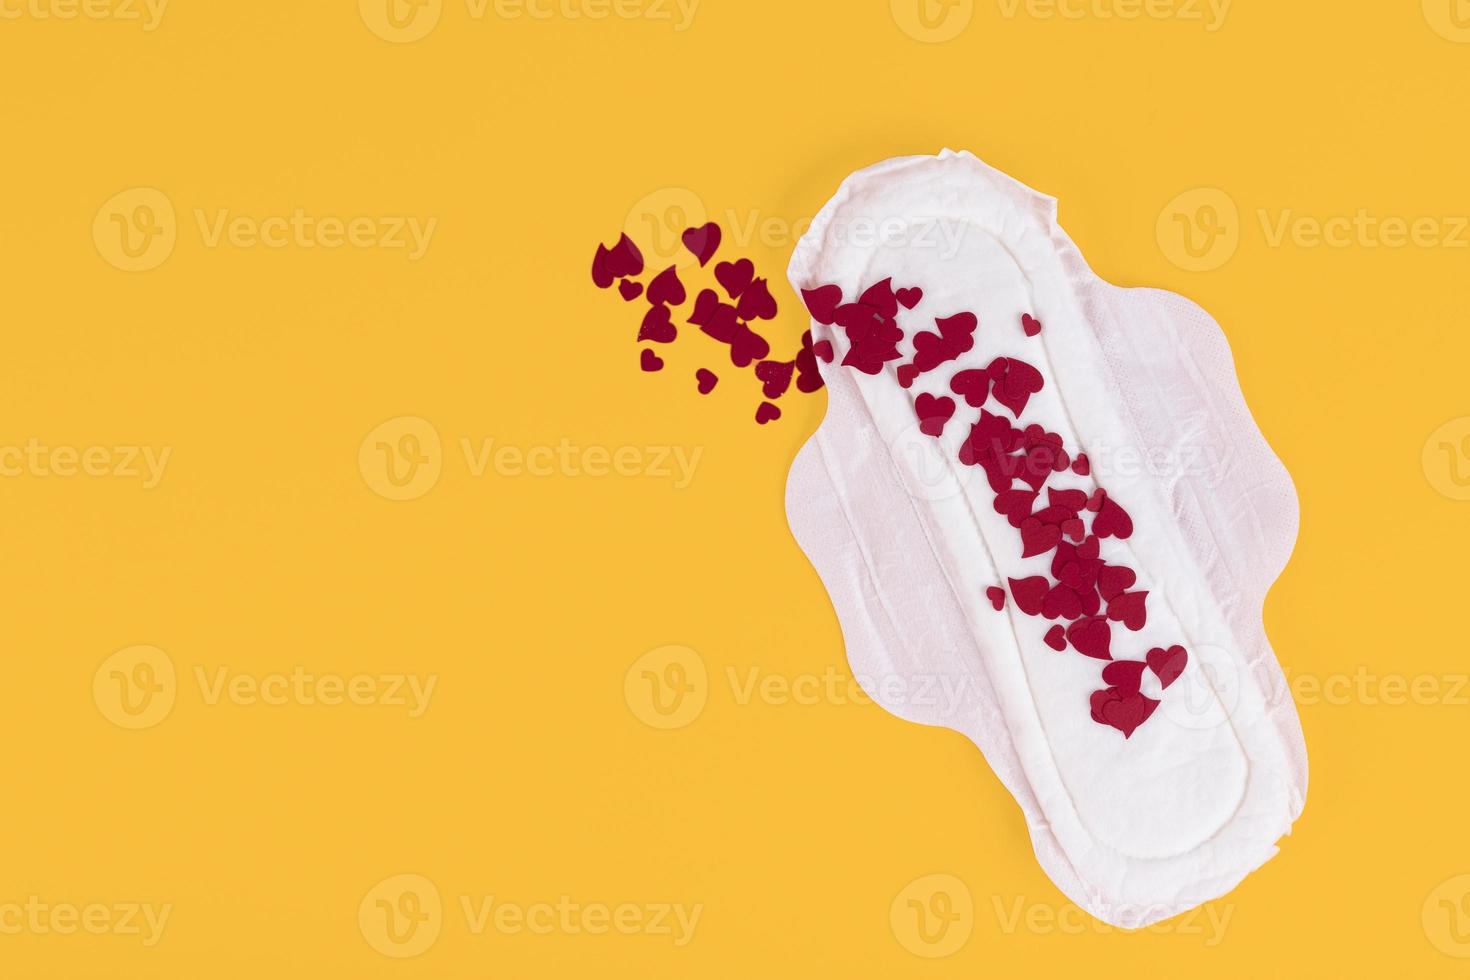 muitos pequenos corações vermelhos, símbolos do ciclo menstrual, em um absorvente feminino. produtos de higiene feminina durante o ciclo menstrual. fundo amarelo. copie o espaço. foto